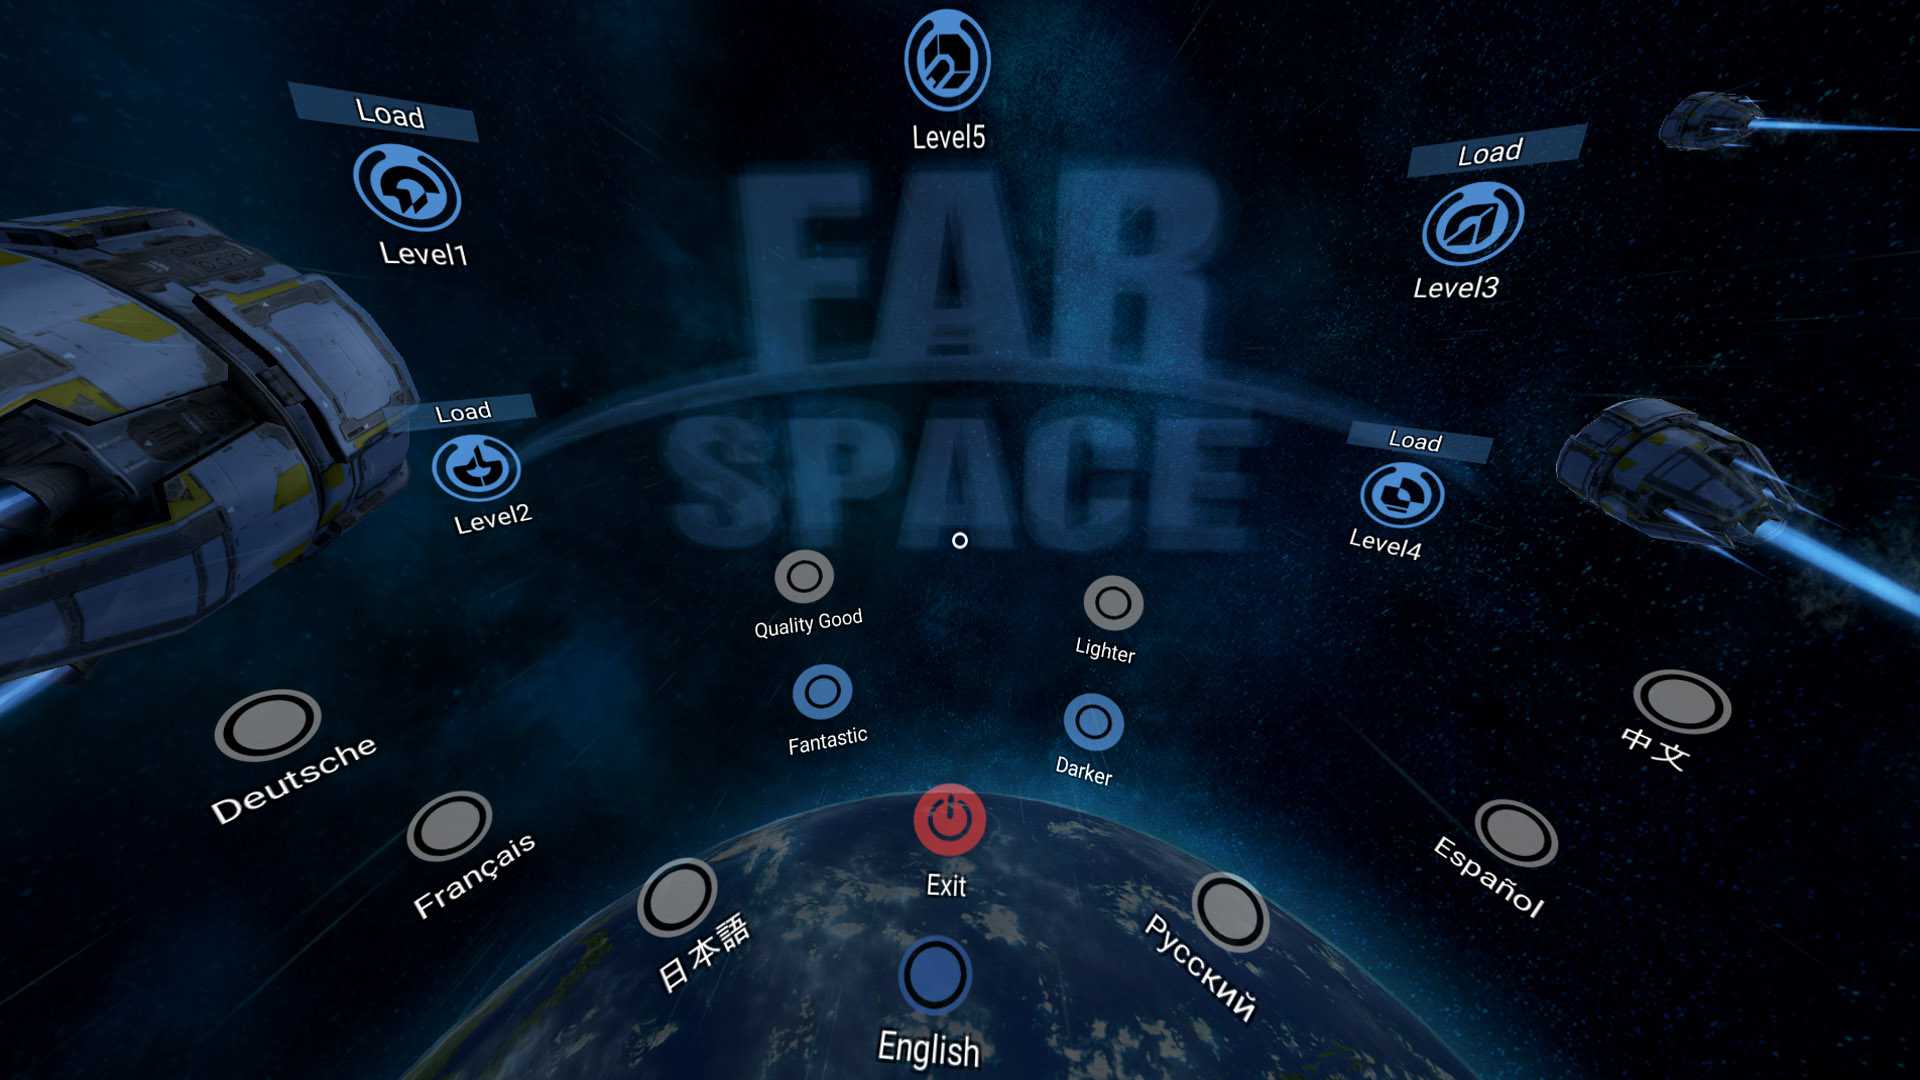 Far Space